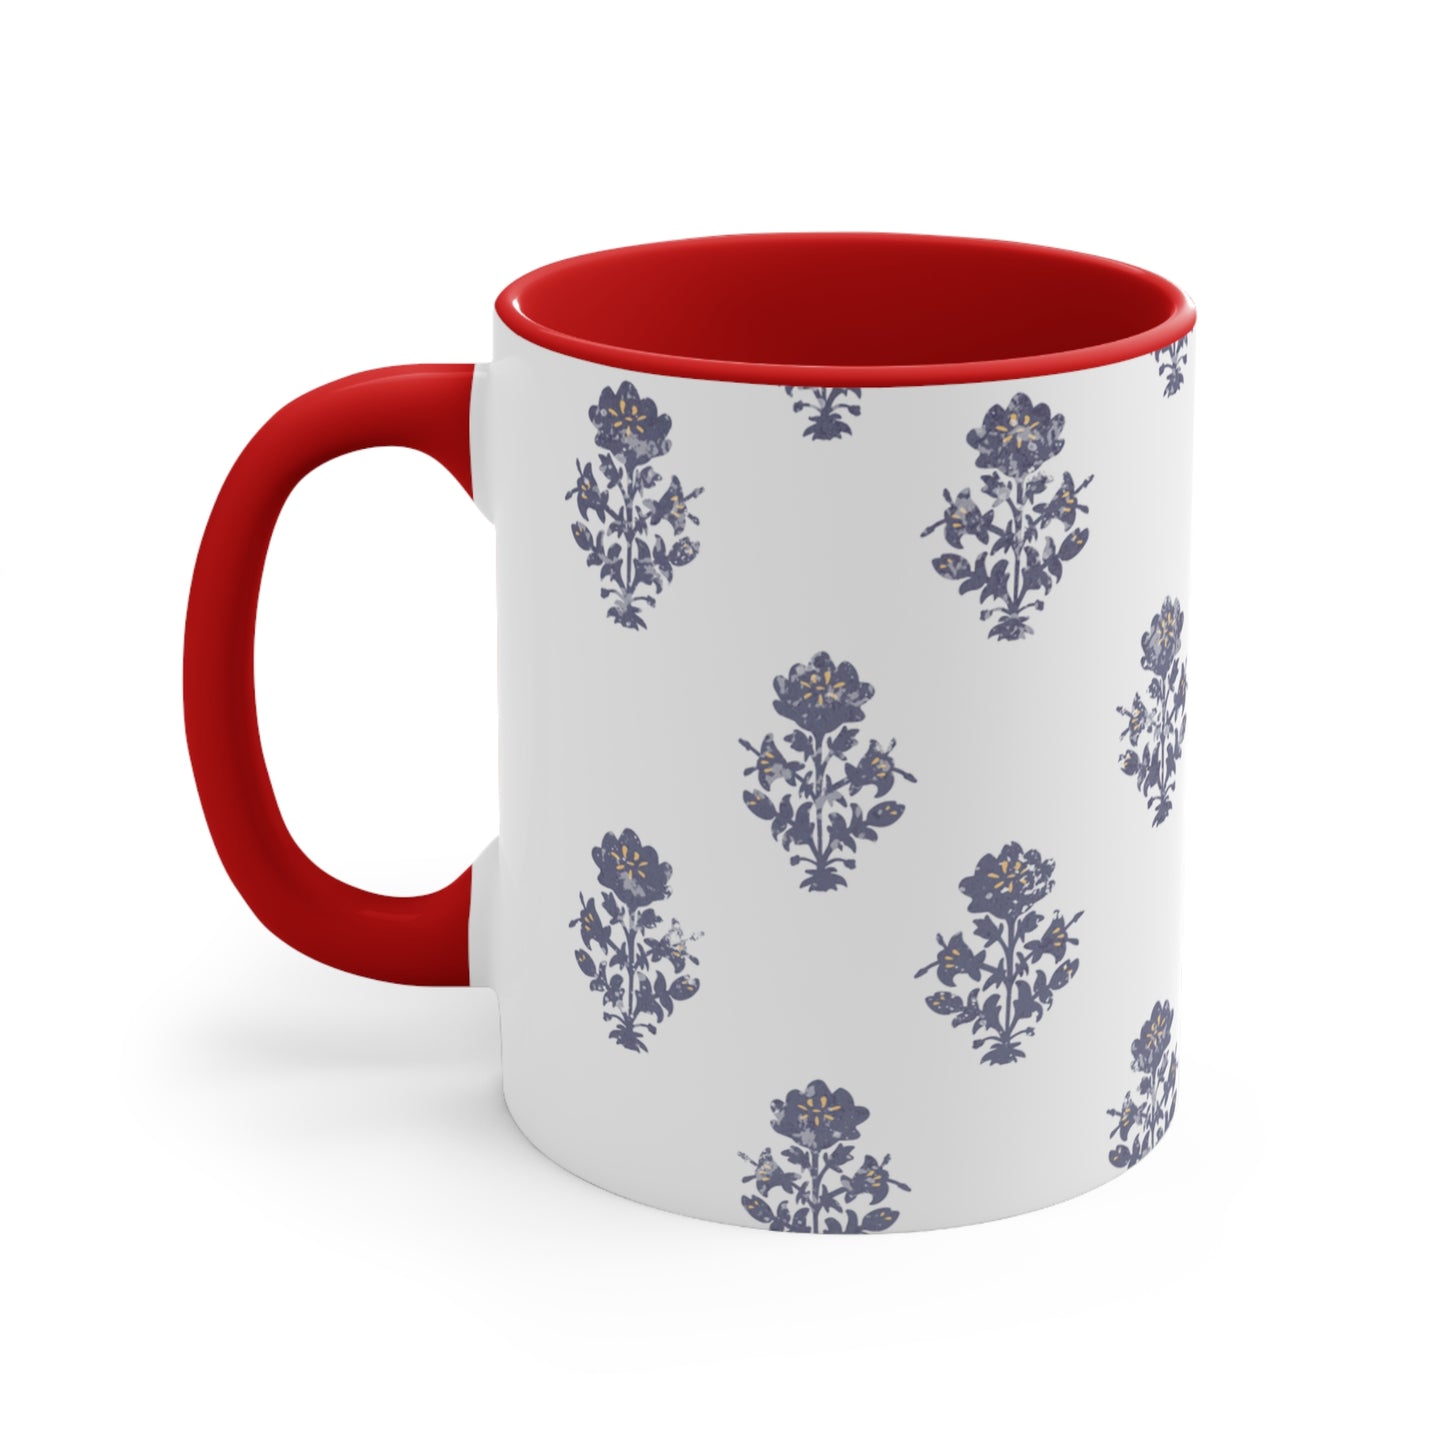 Indian block print mug, coffee mug, tea mug, Mug, 11oz